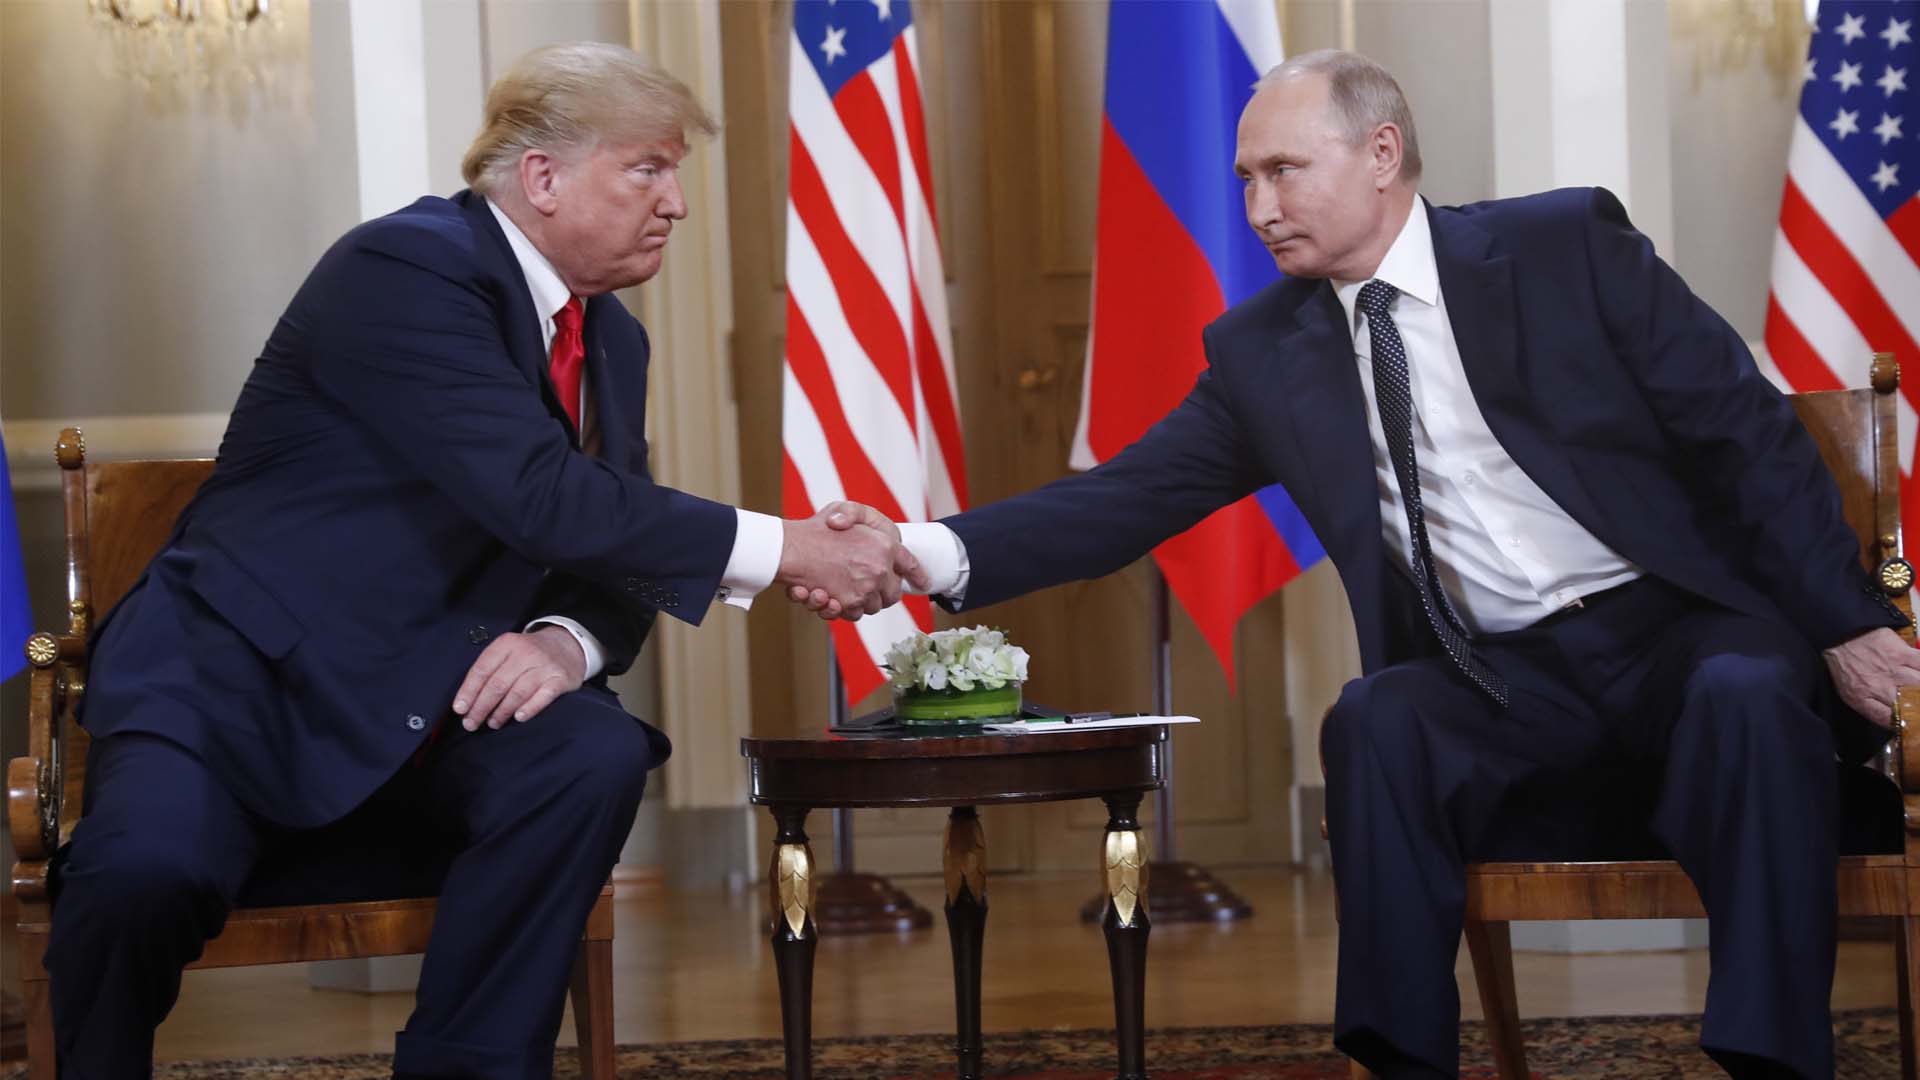 Trump asegura que Putin "probablemente" ordenó matar gente, pero que "confía" en él